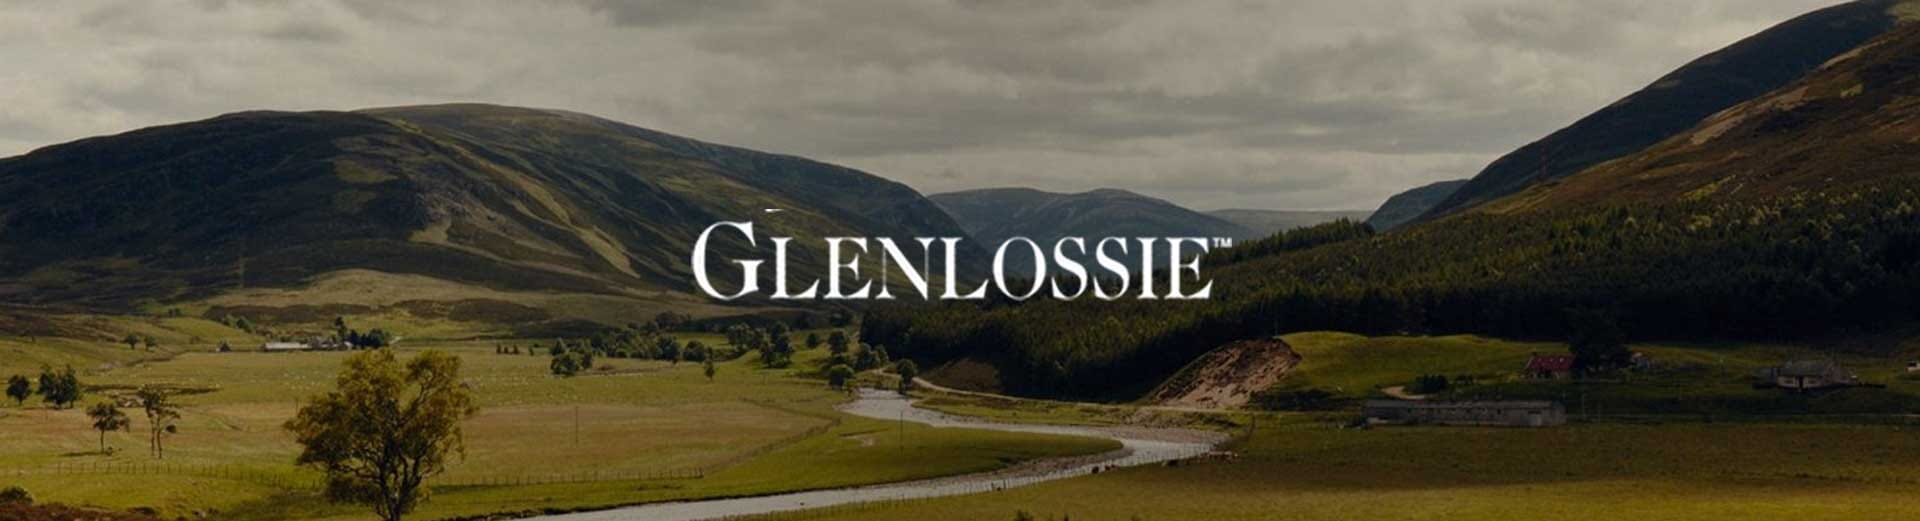 Glenlossie Distillery